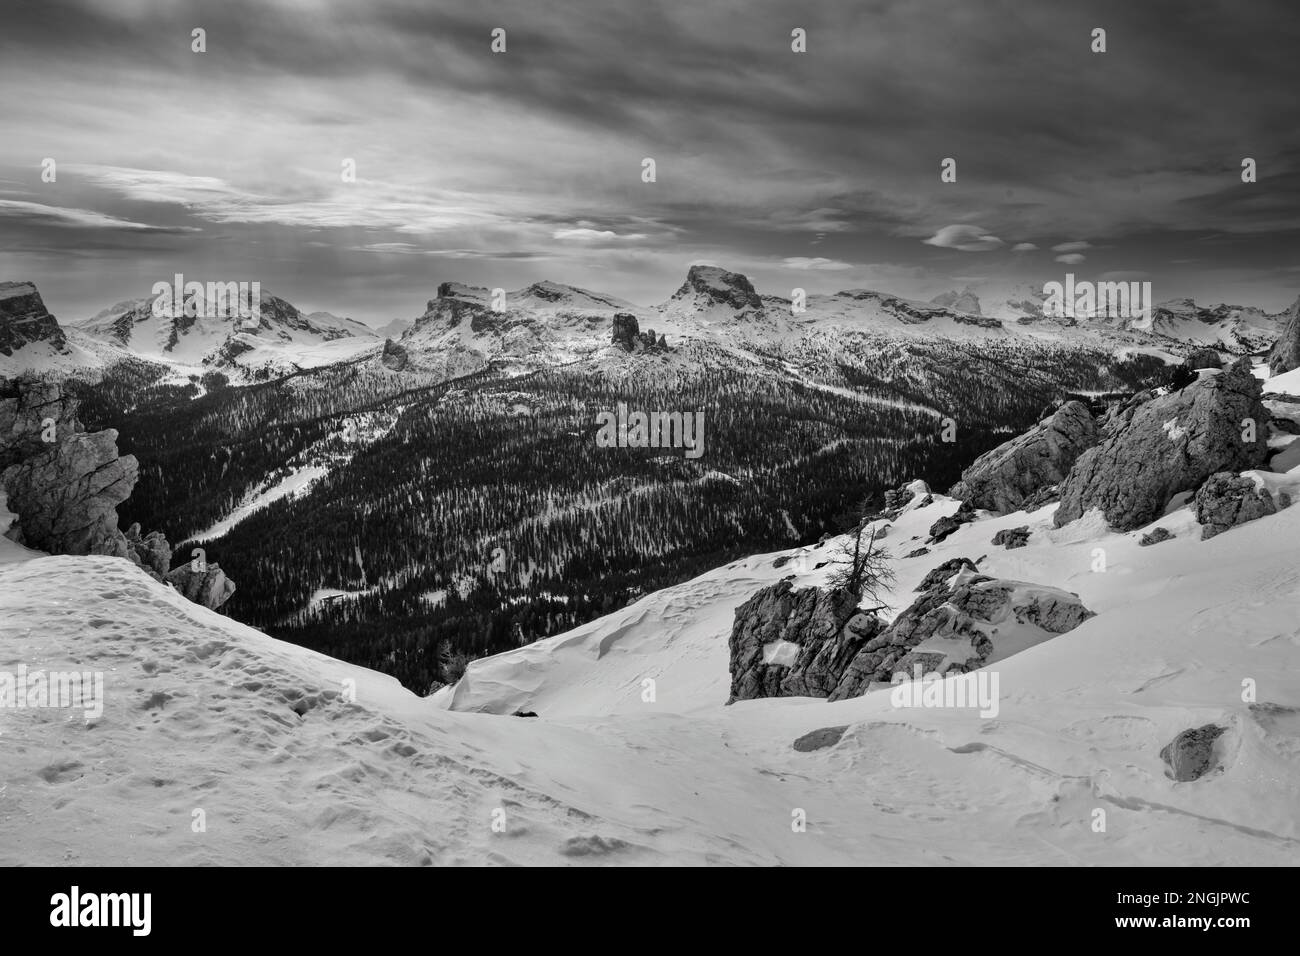 Cinque Torri in the Nuvolao Group Mountain Range Monochrome Winter Landscape Stock Photo